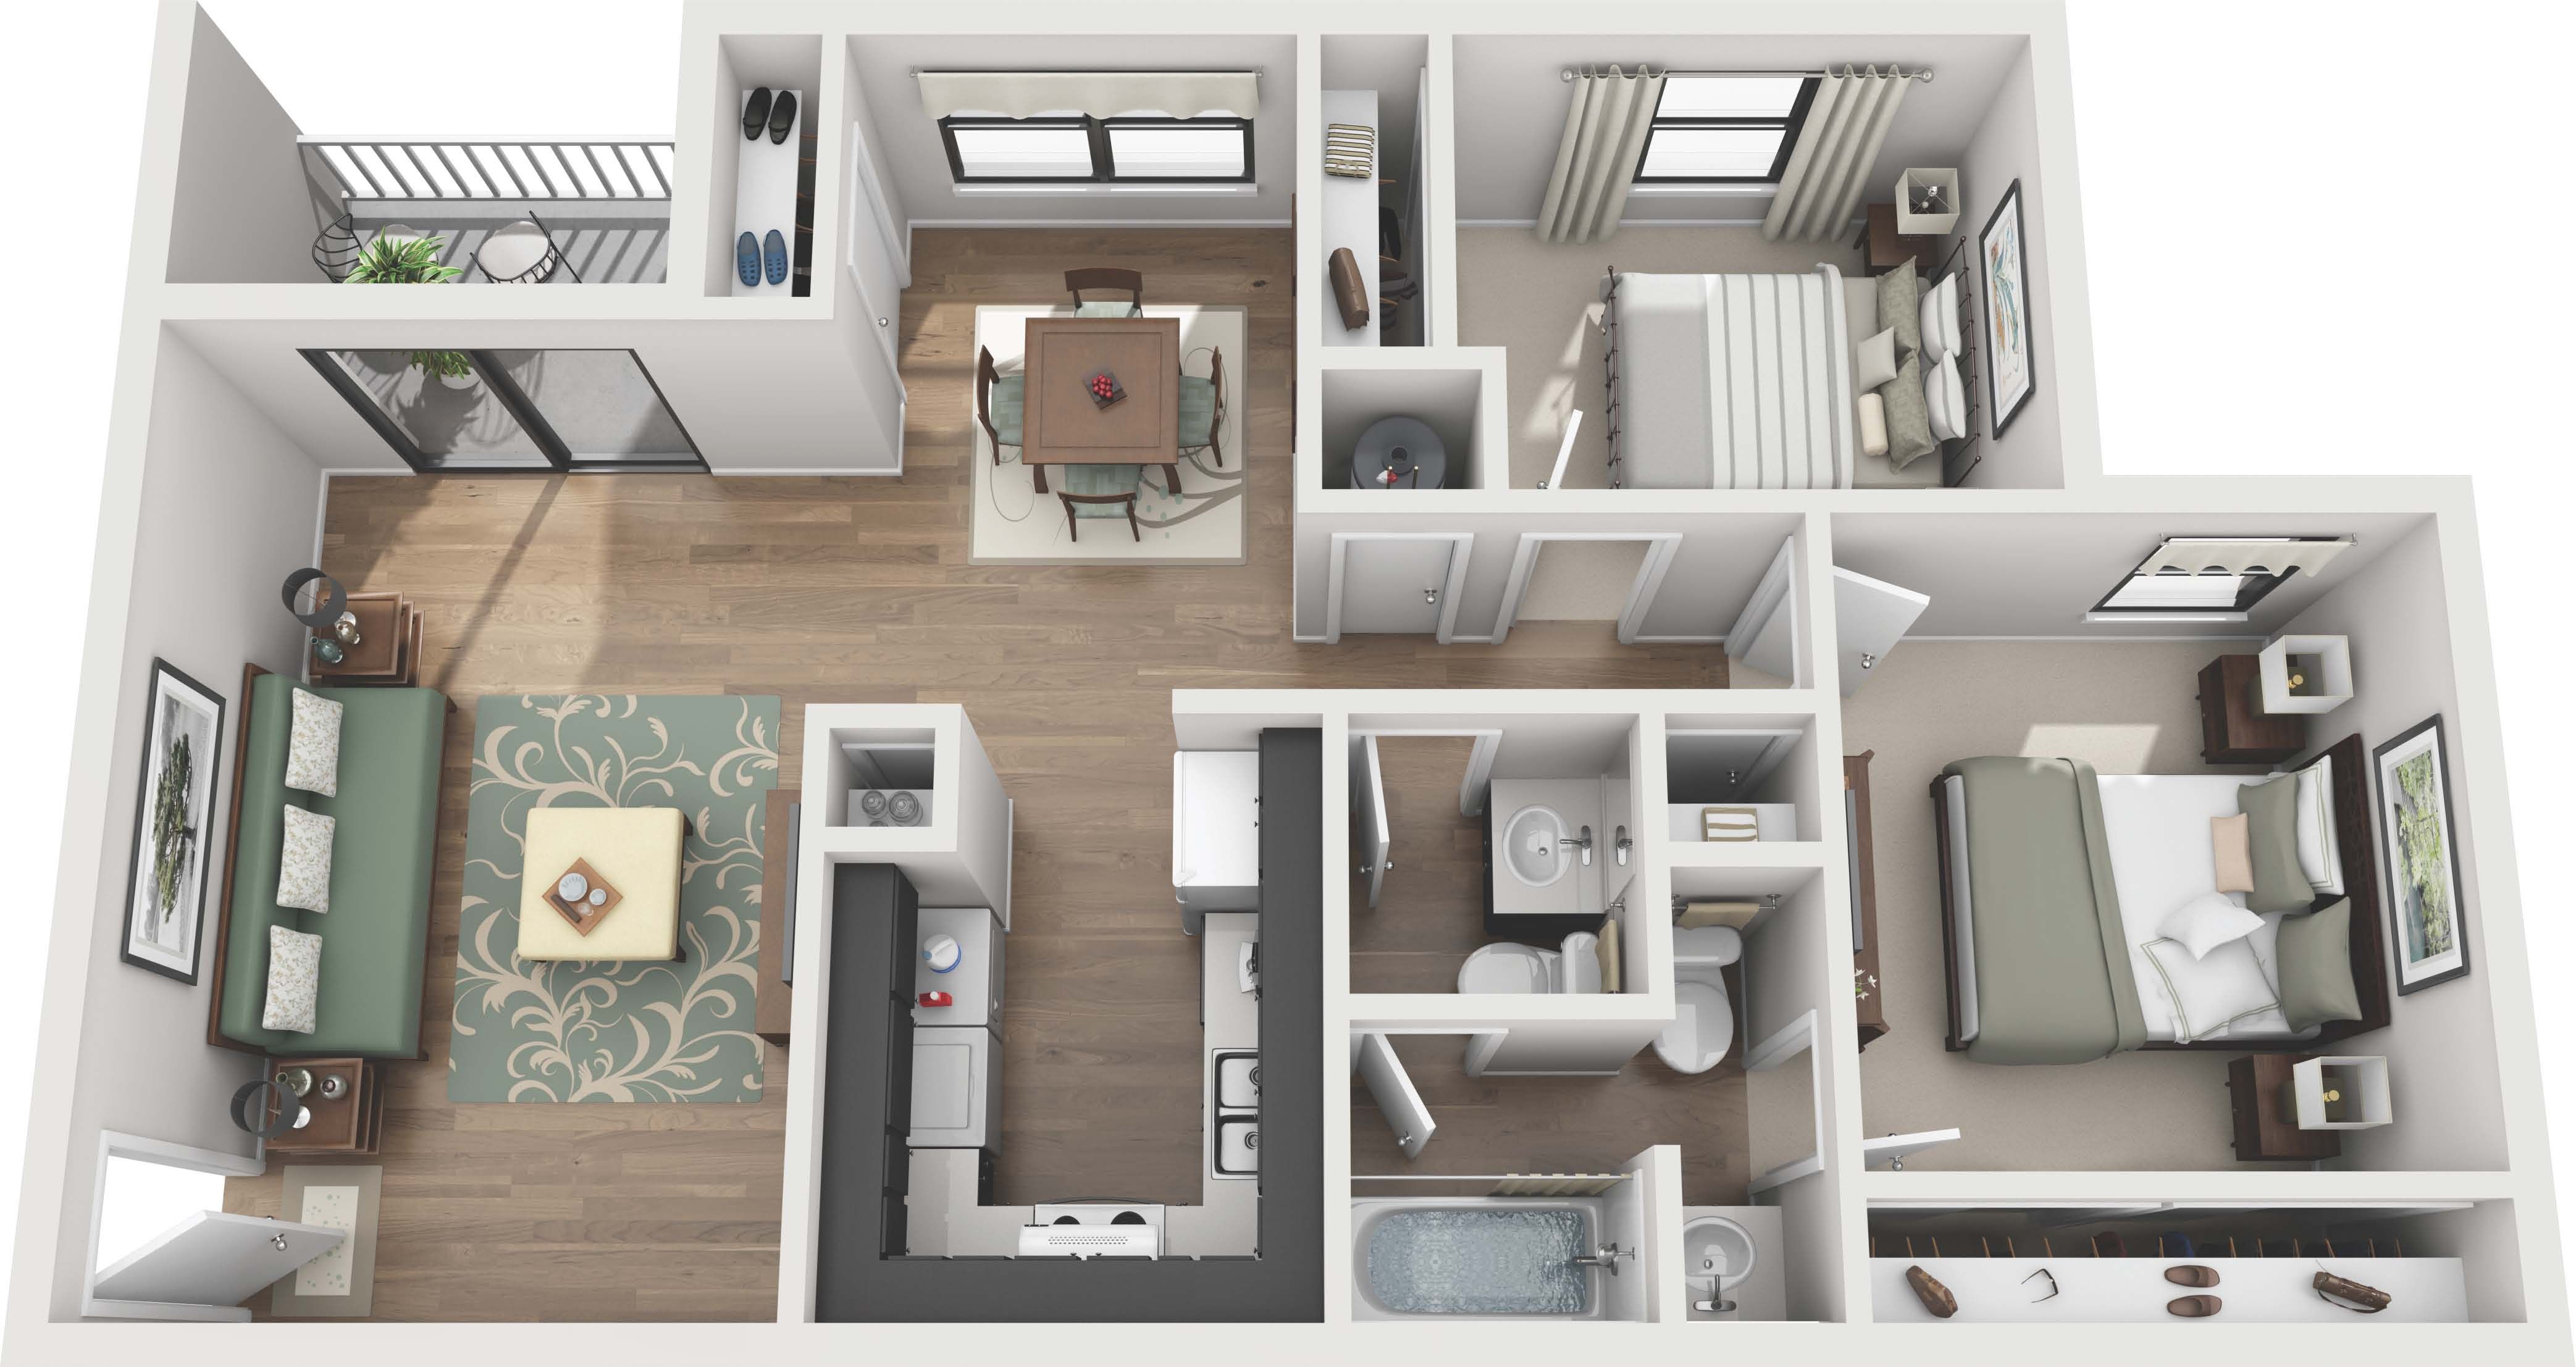 2 Bedroom Luxury Apartments in Franklin, TN Floor Plans